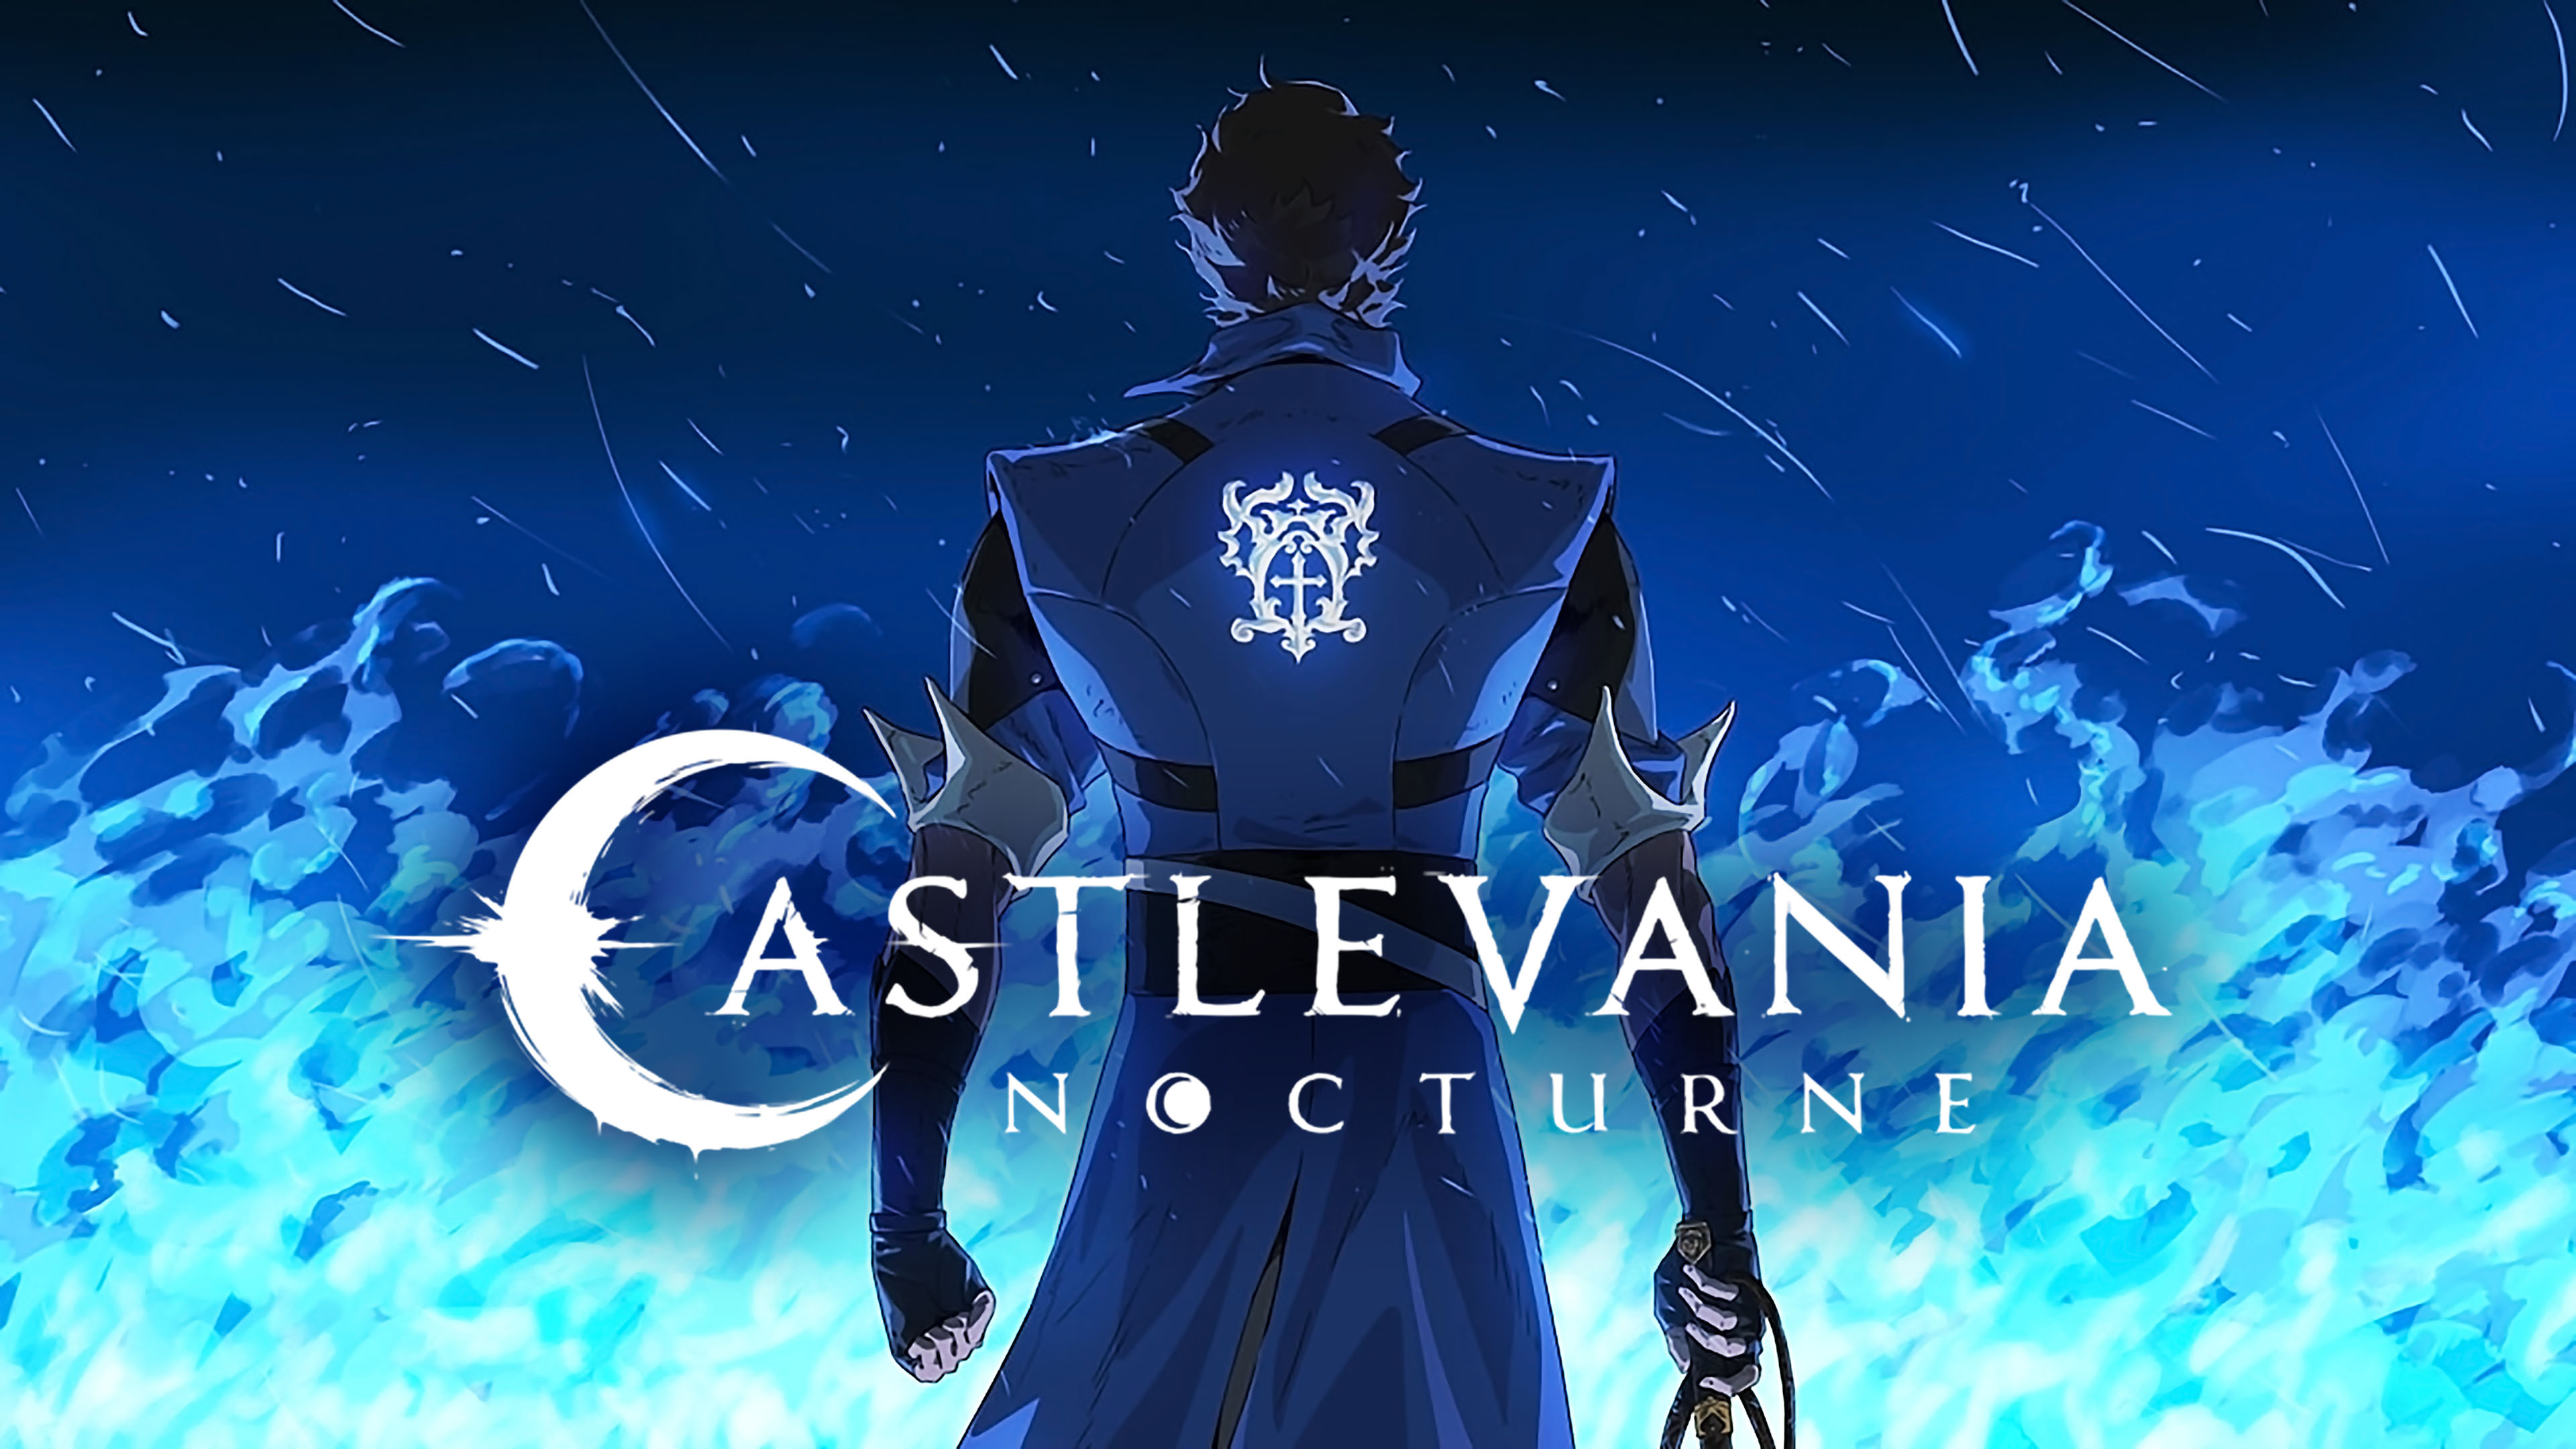 Drugi sezon Castlevania: Nocturne jest już w przygotowaniu